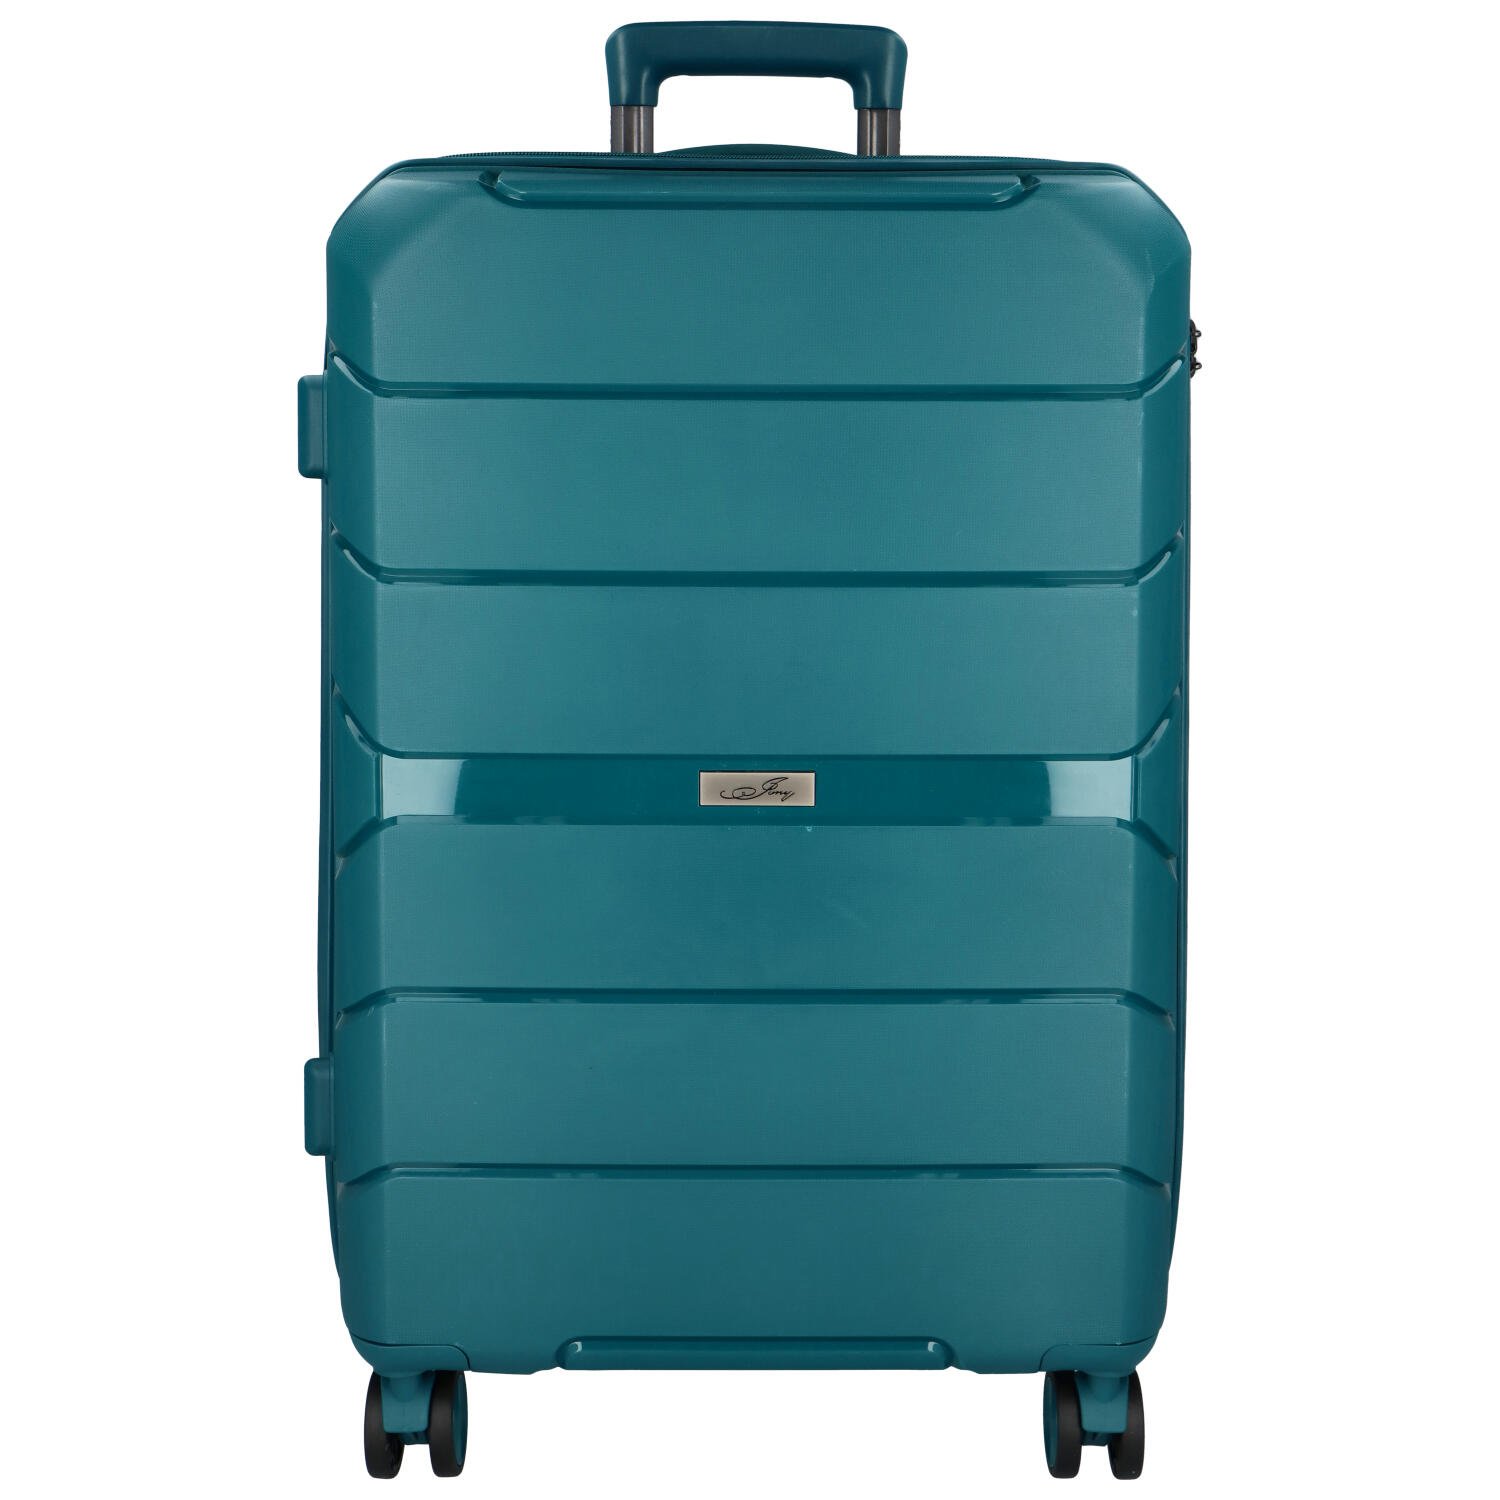 Cestovní plastový kufr Franco velikosti L, modrozelený